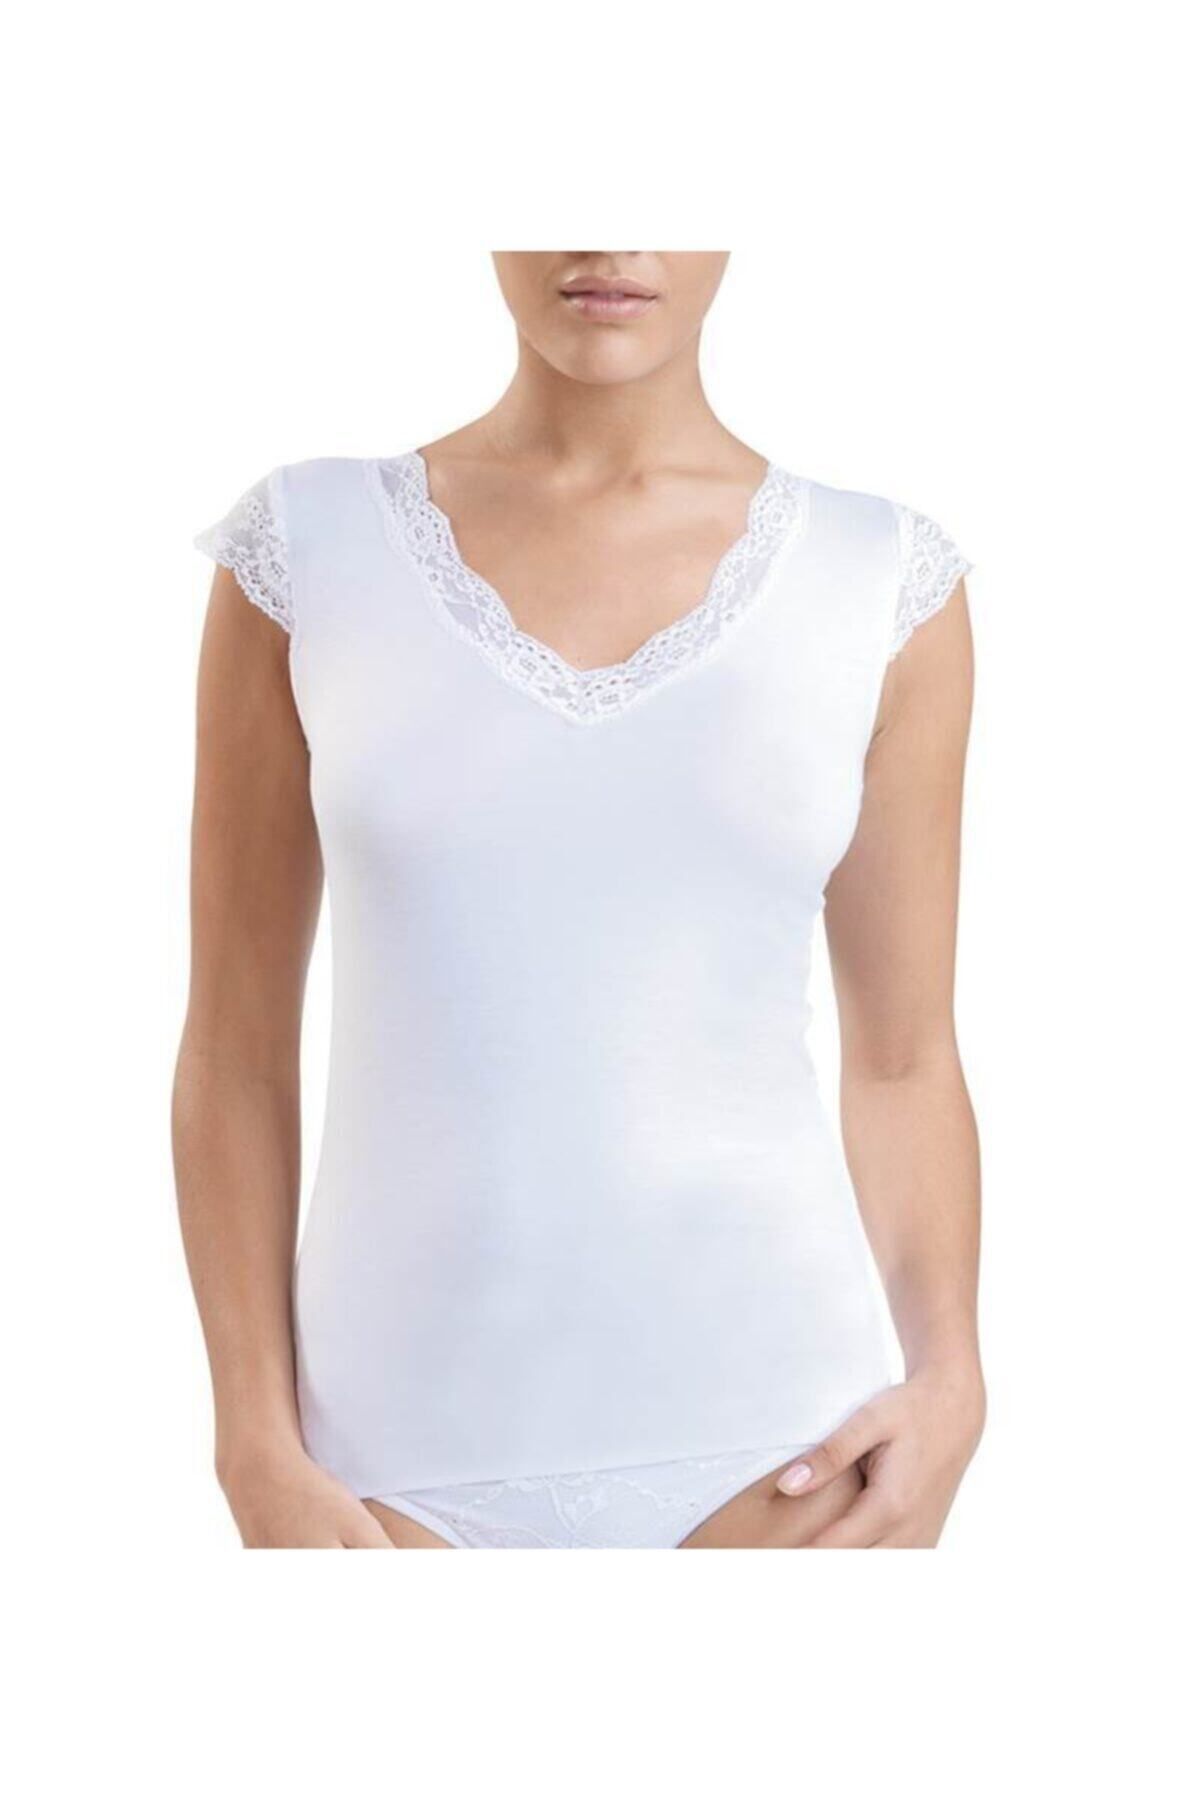 Blackspade Kadın T-shirt 1348 - Beyaz